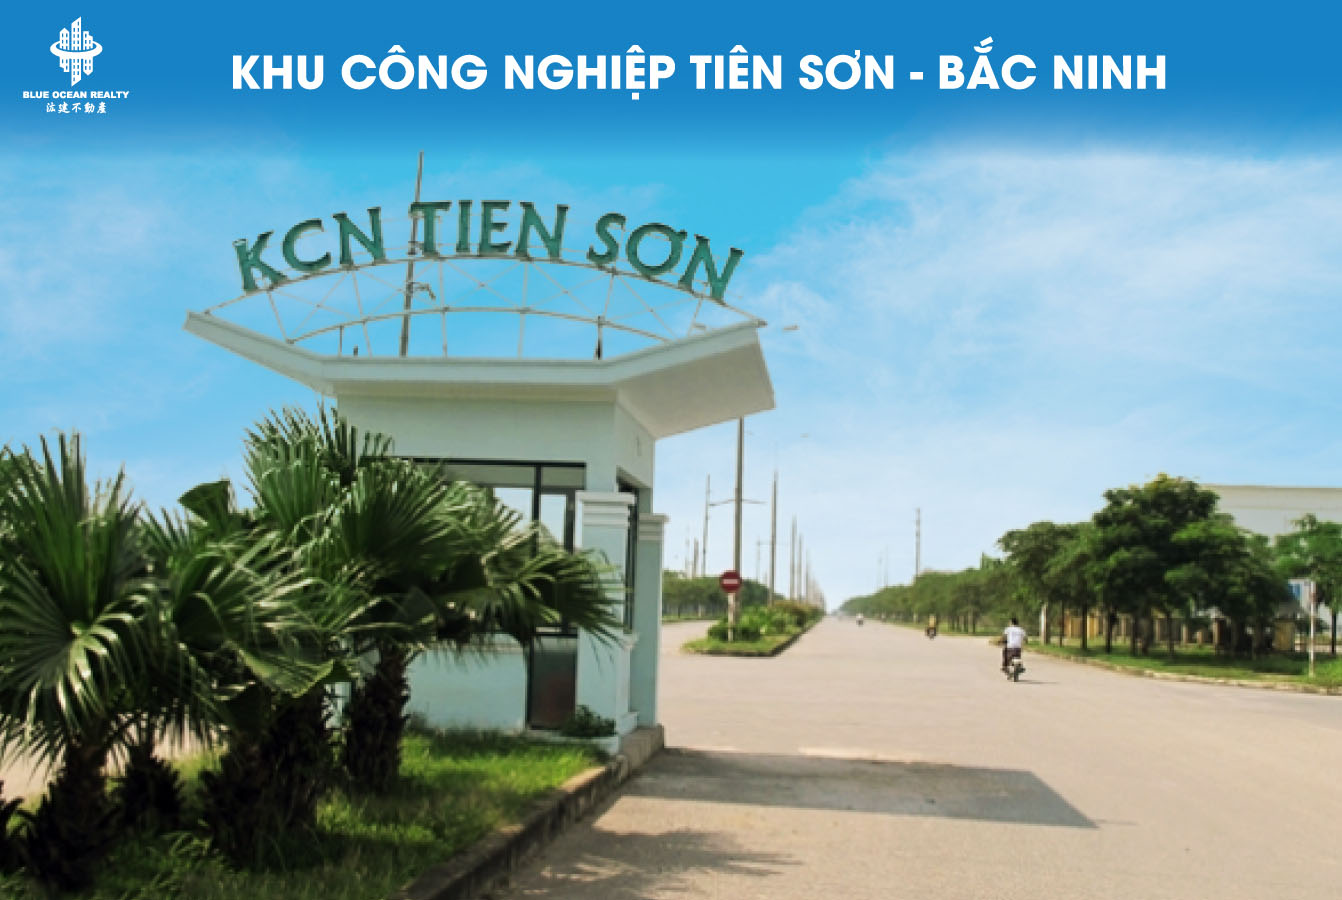 Khu công nghiệp (KCN) Tiên Sơn - Bắc Ninh